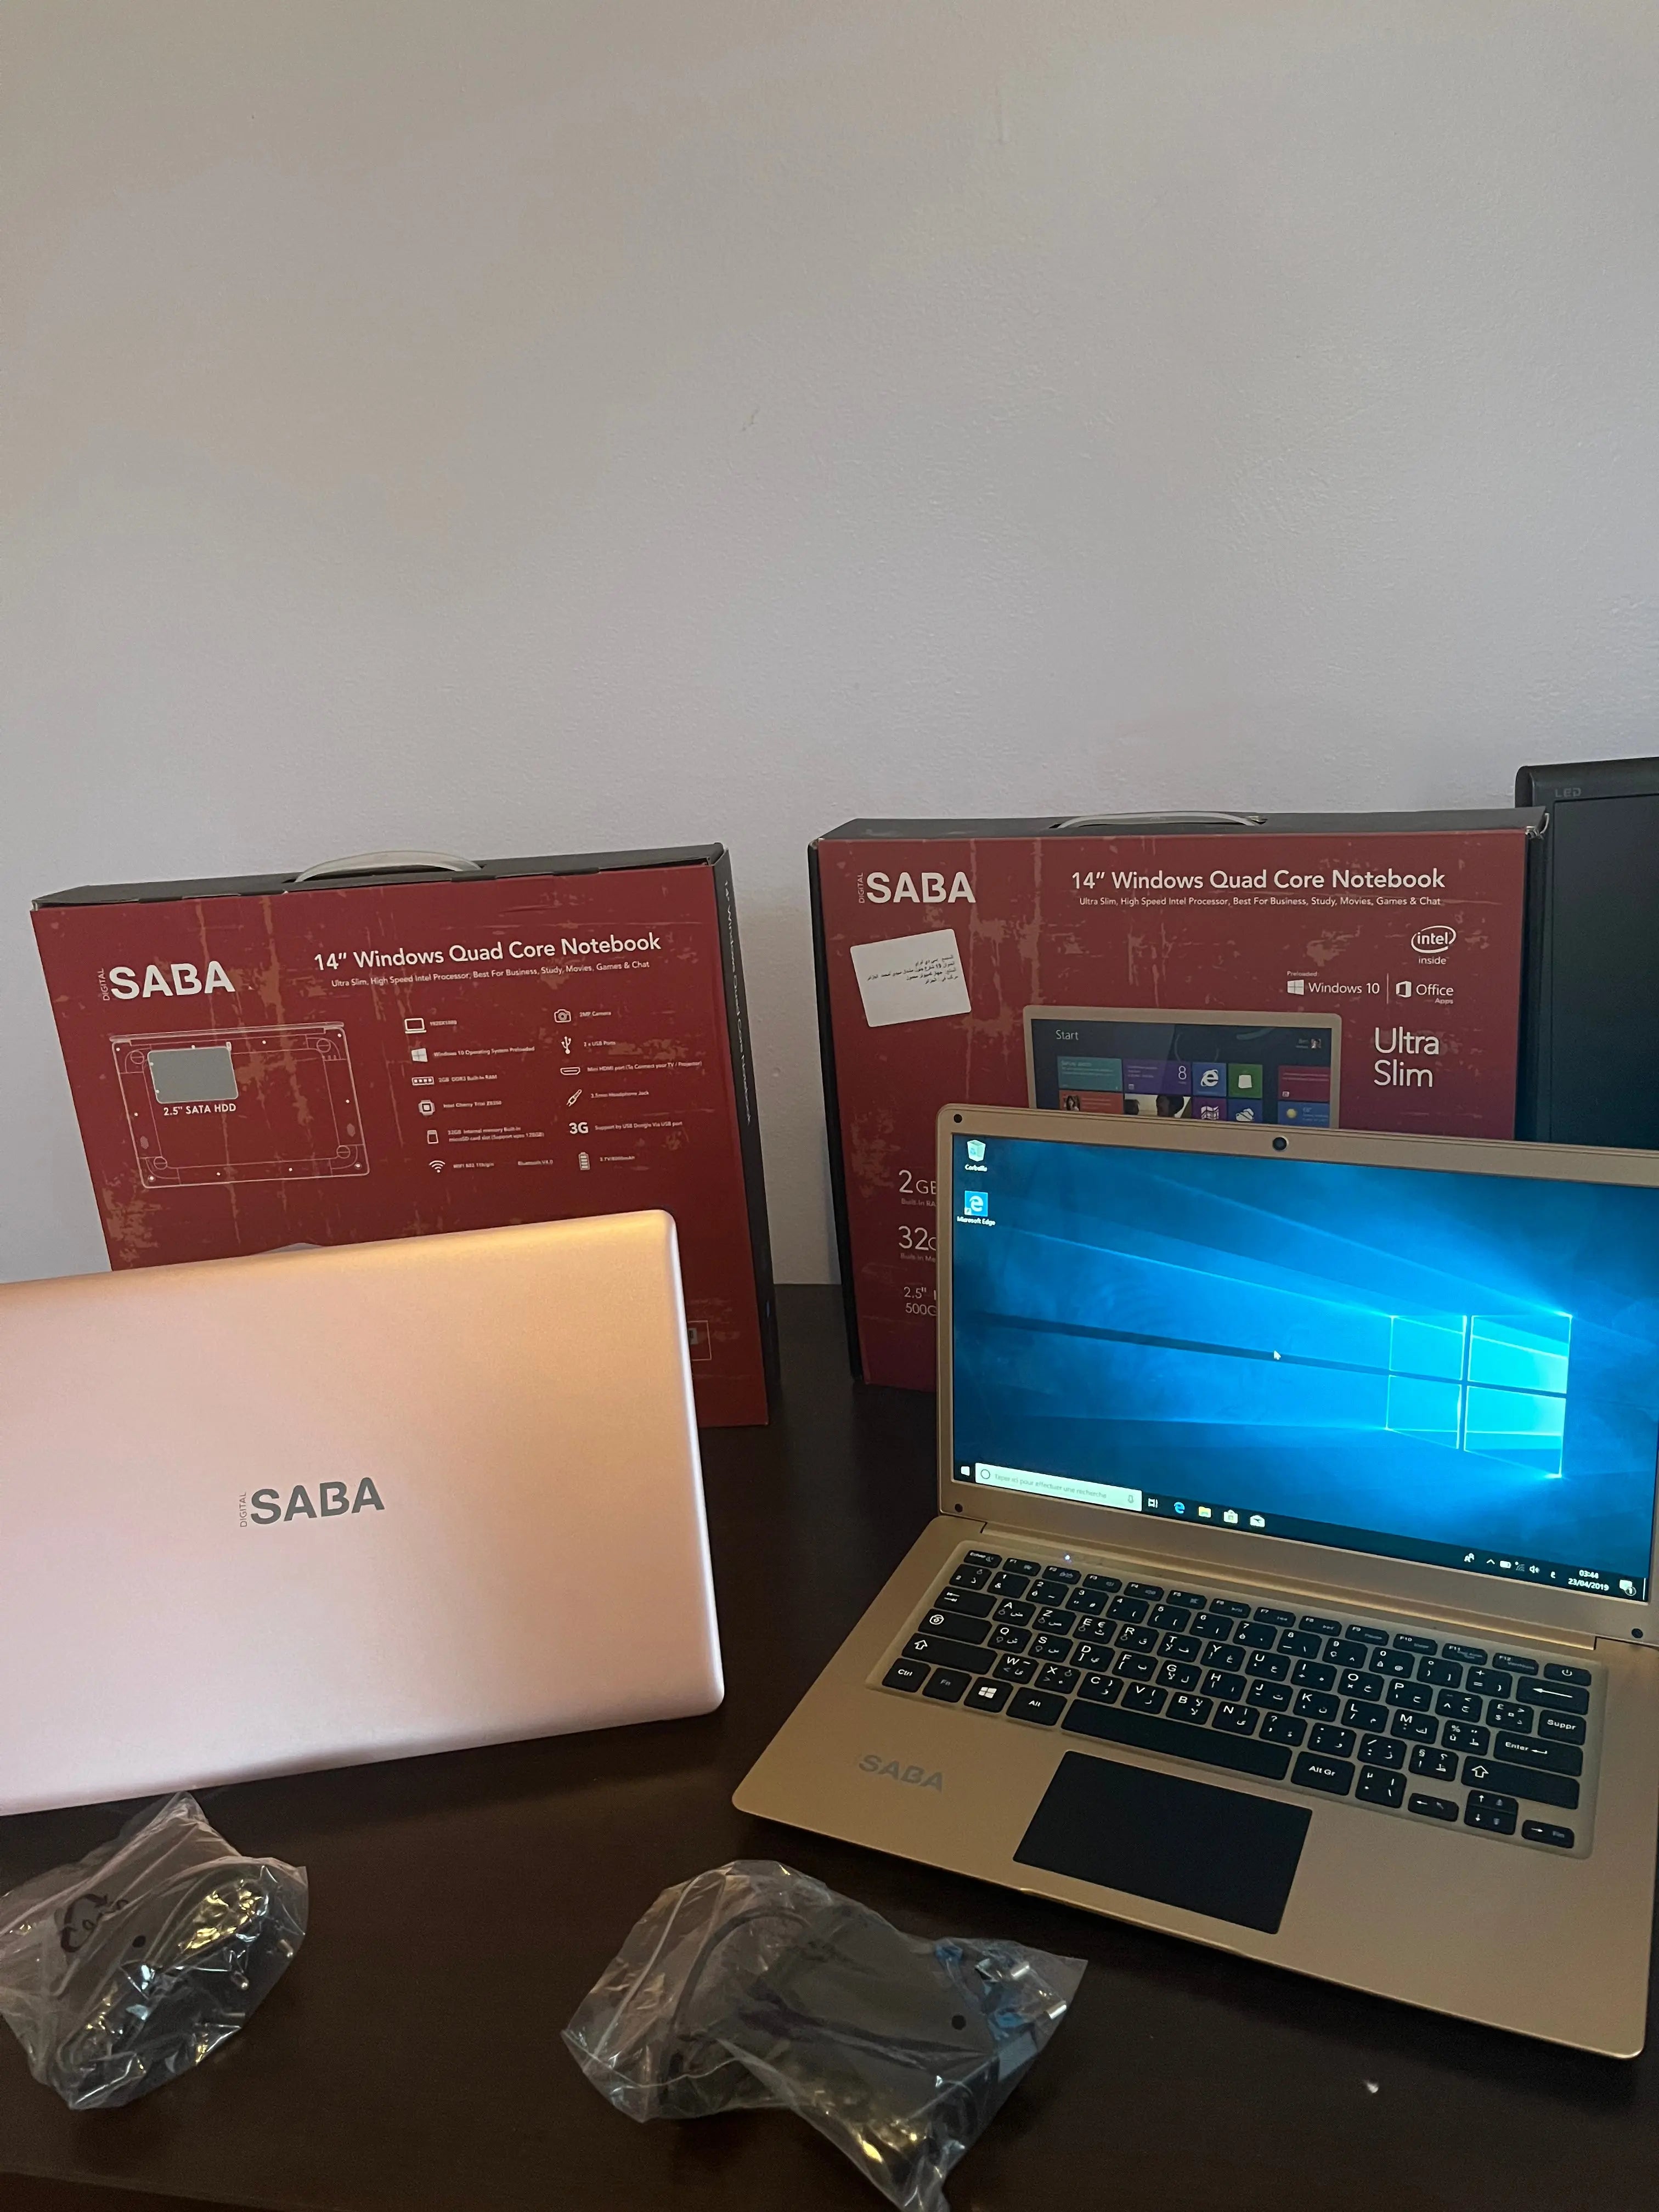 PC Portable Computer SABA حاسوب محمول neuf جديد SASHOPDZ